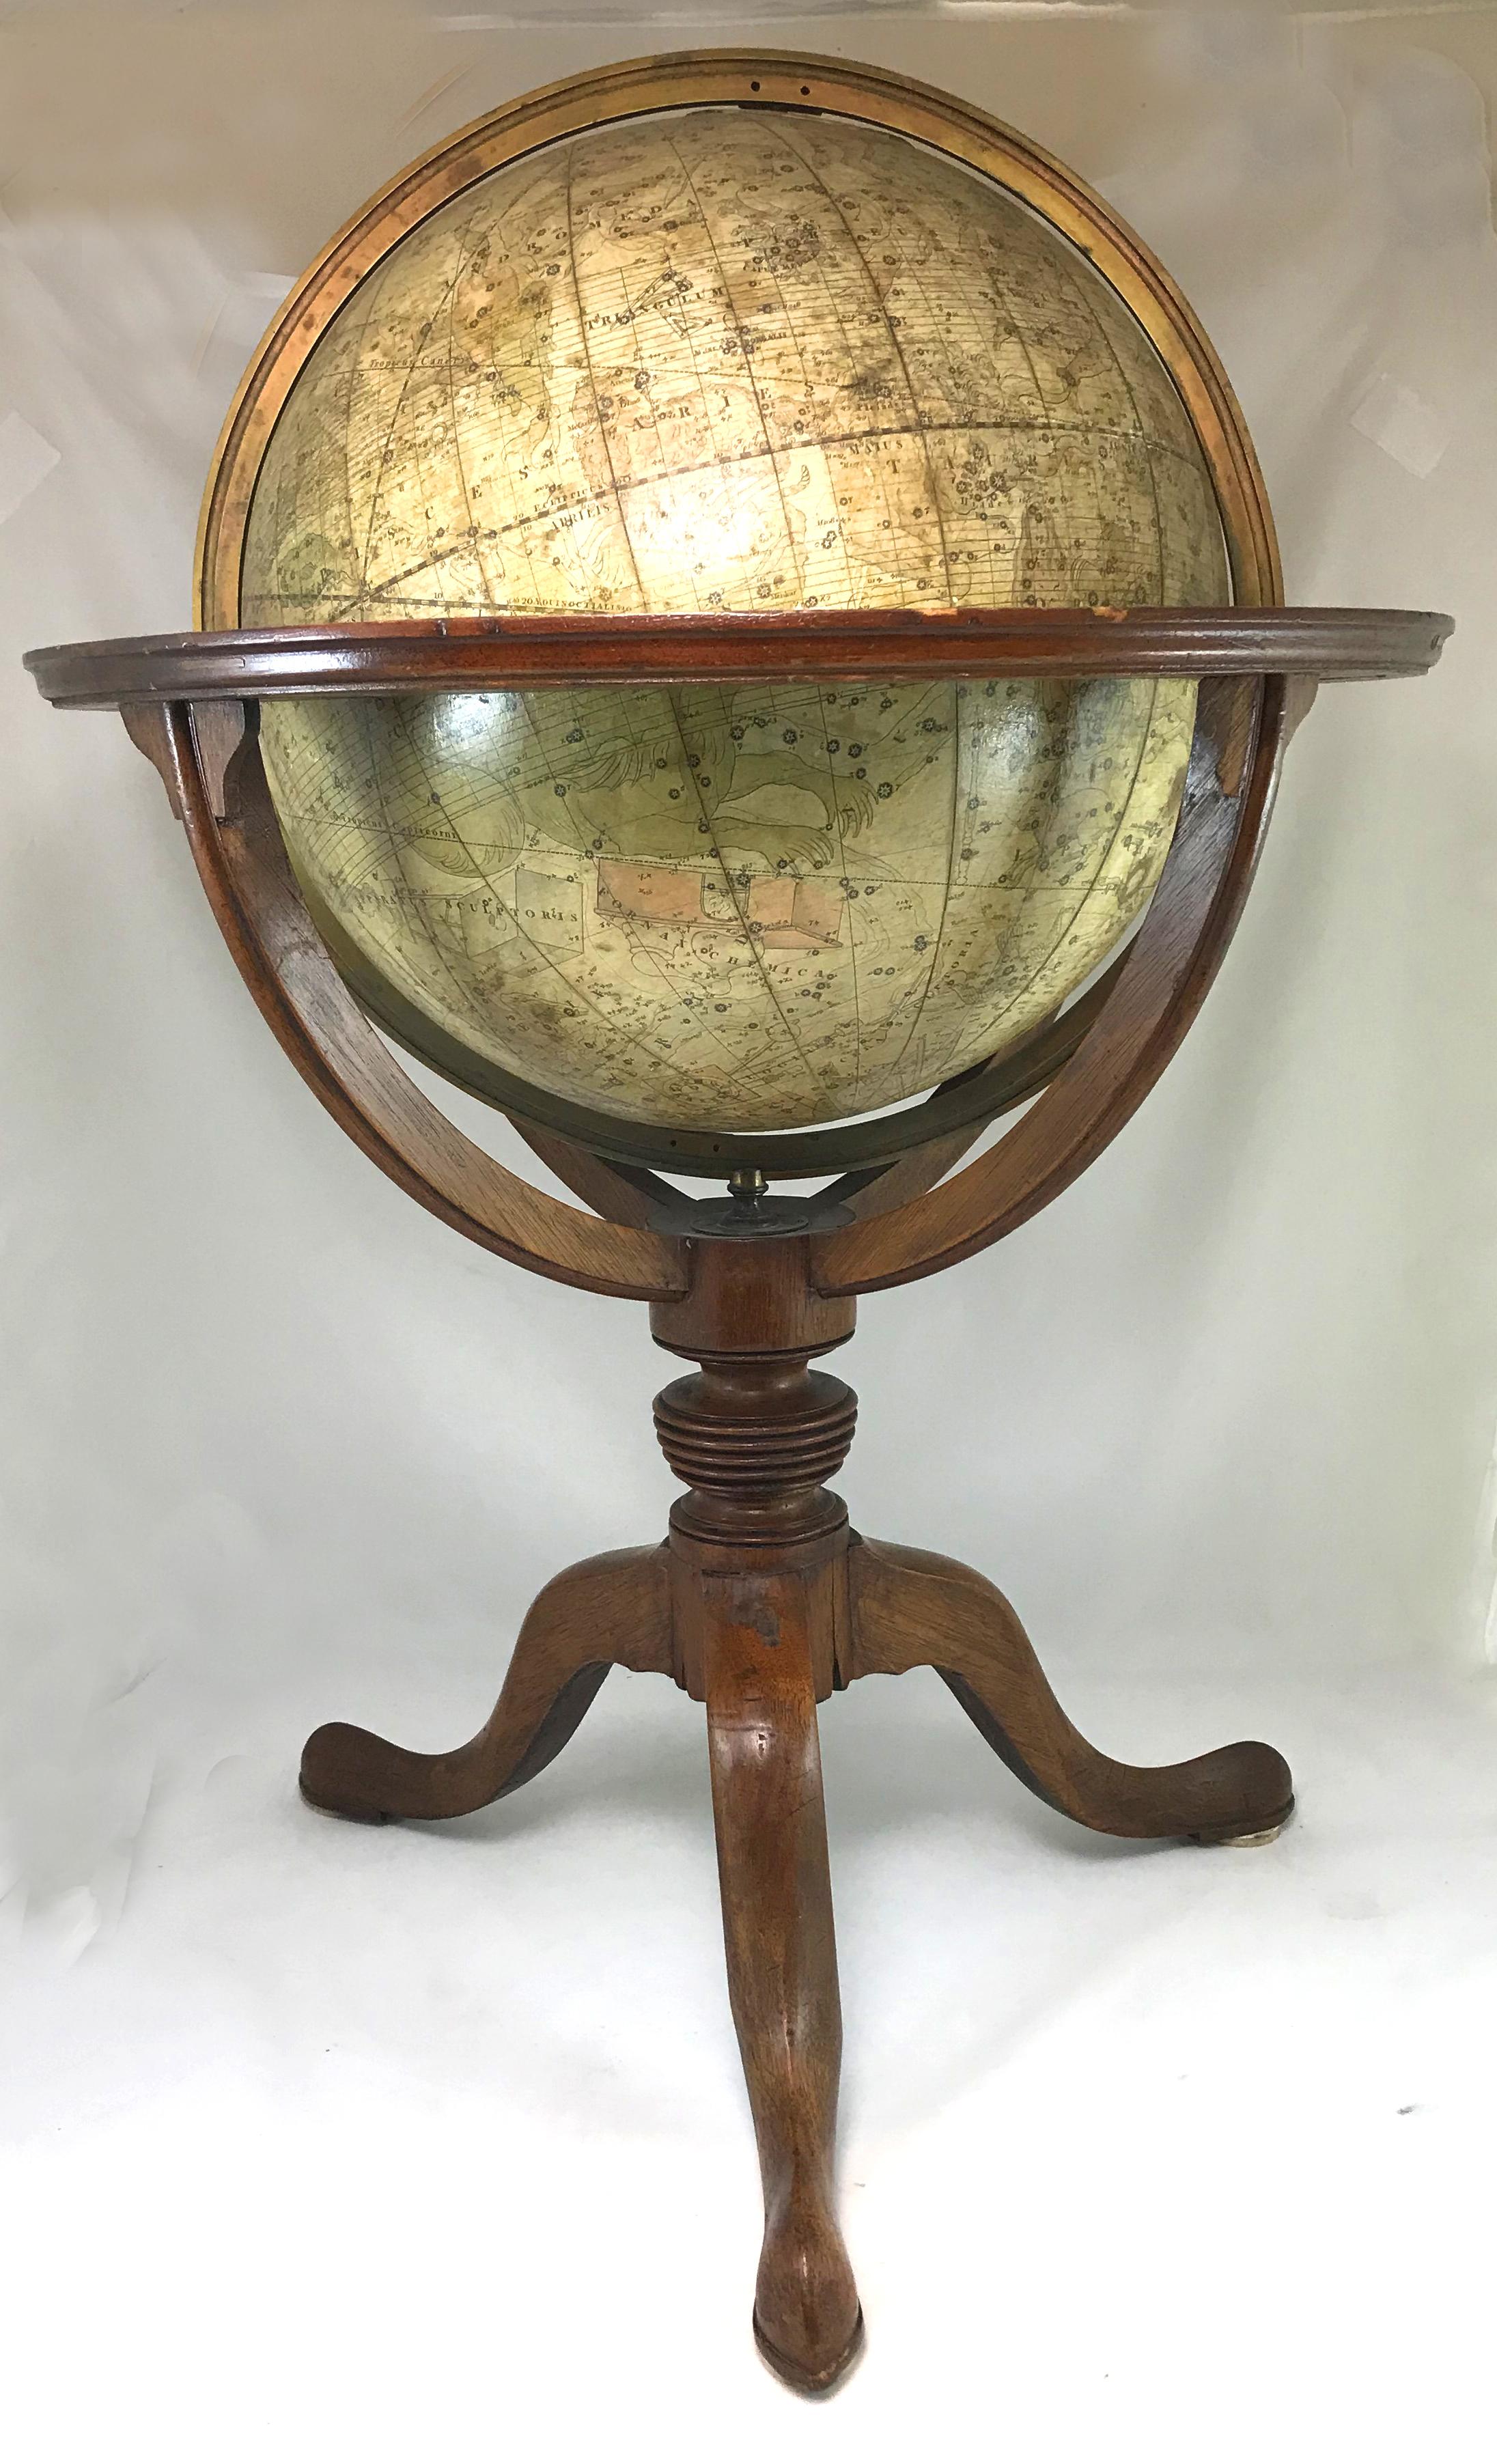 Une belle paire de globes de table anglais de 12 pouces sur pied fabriqués par J & W. Cary, le globe de gauche avec cartouche étiqueté 